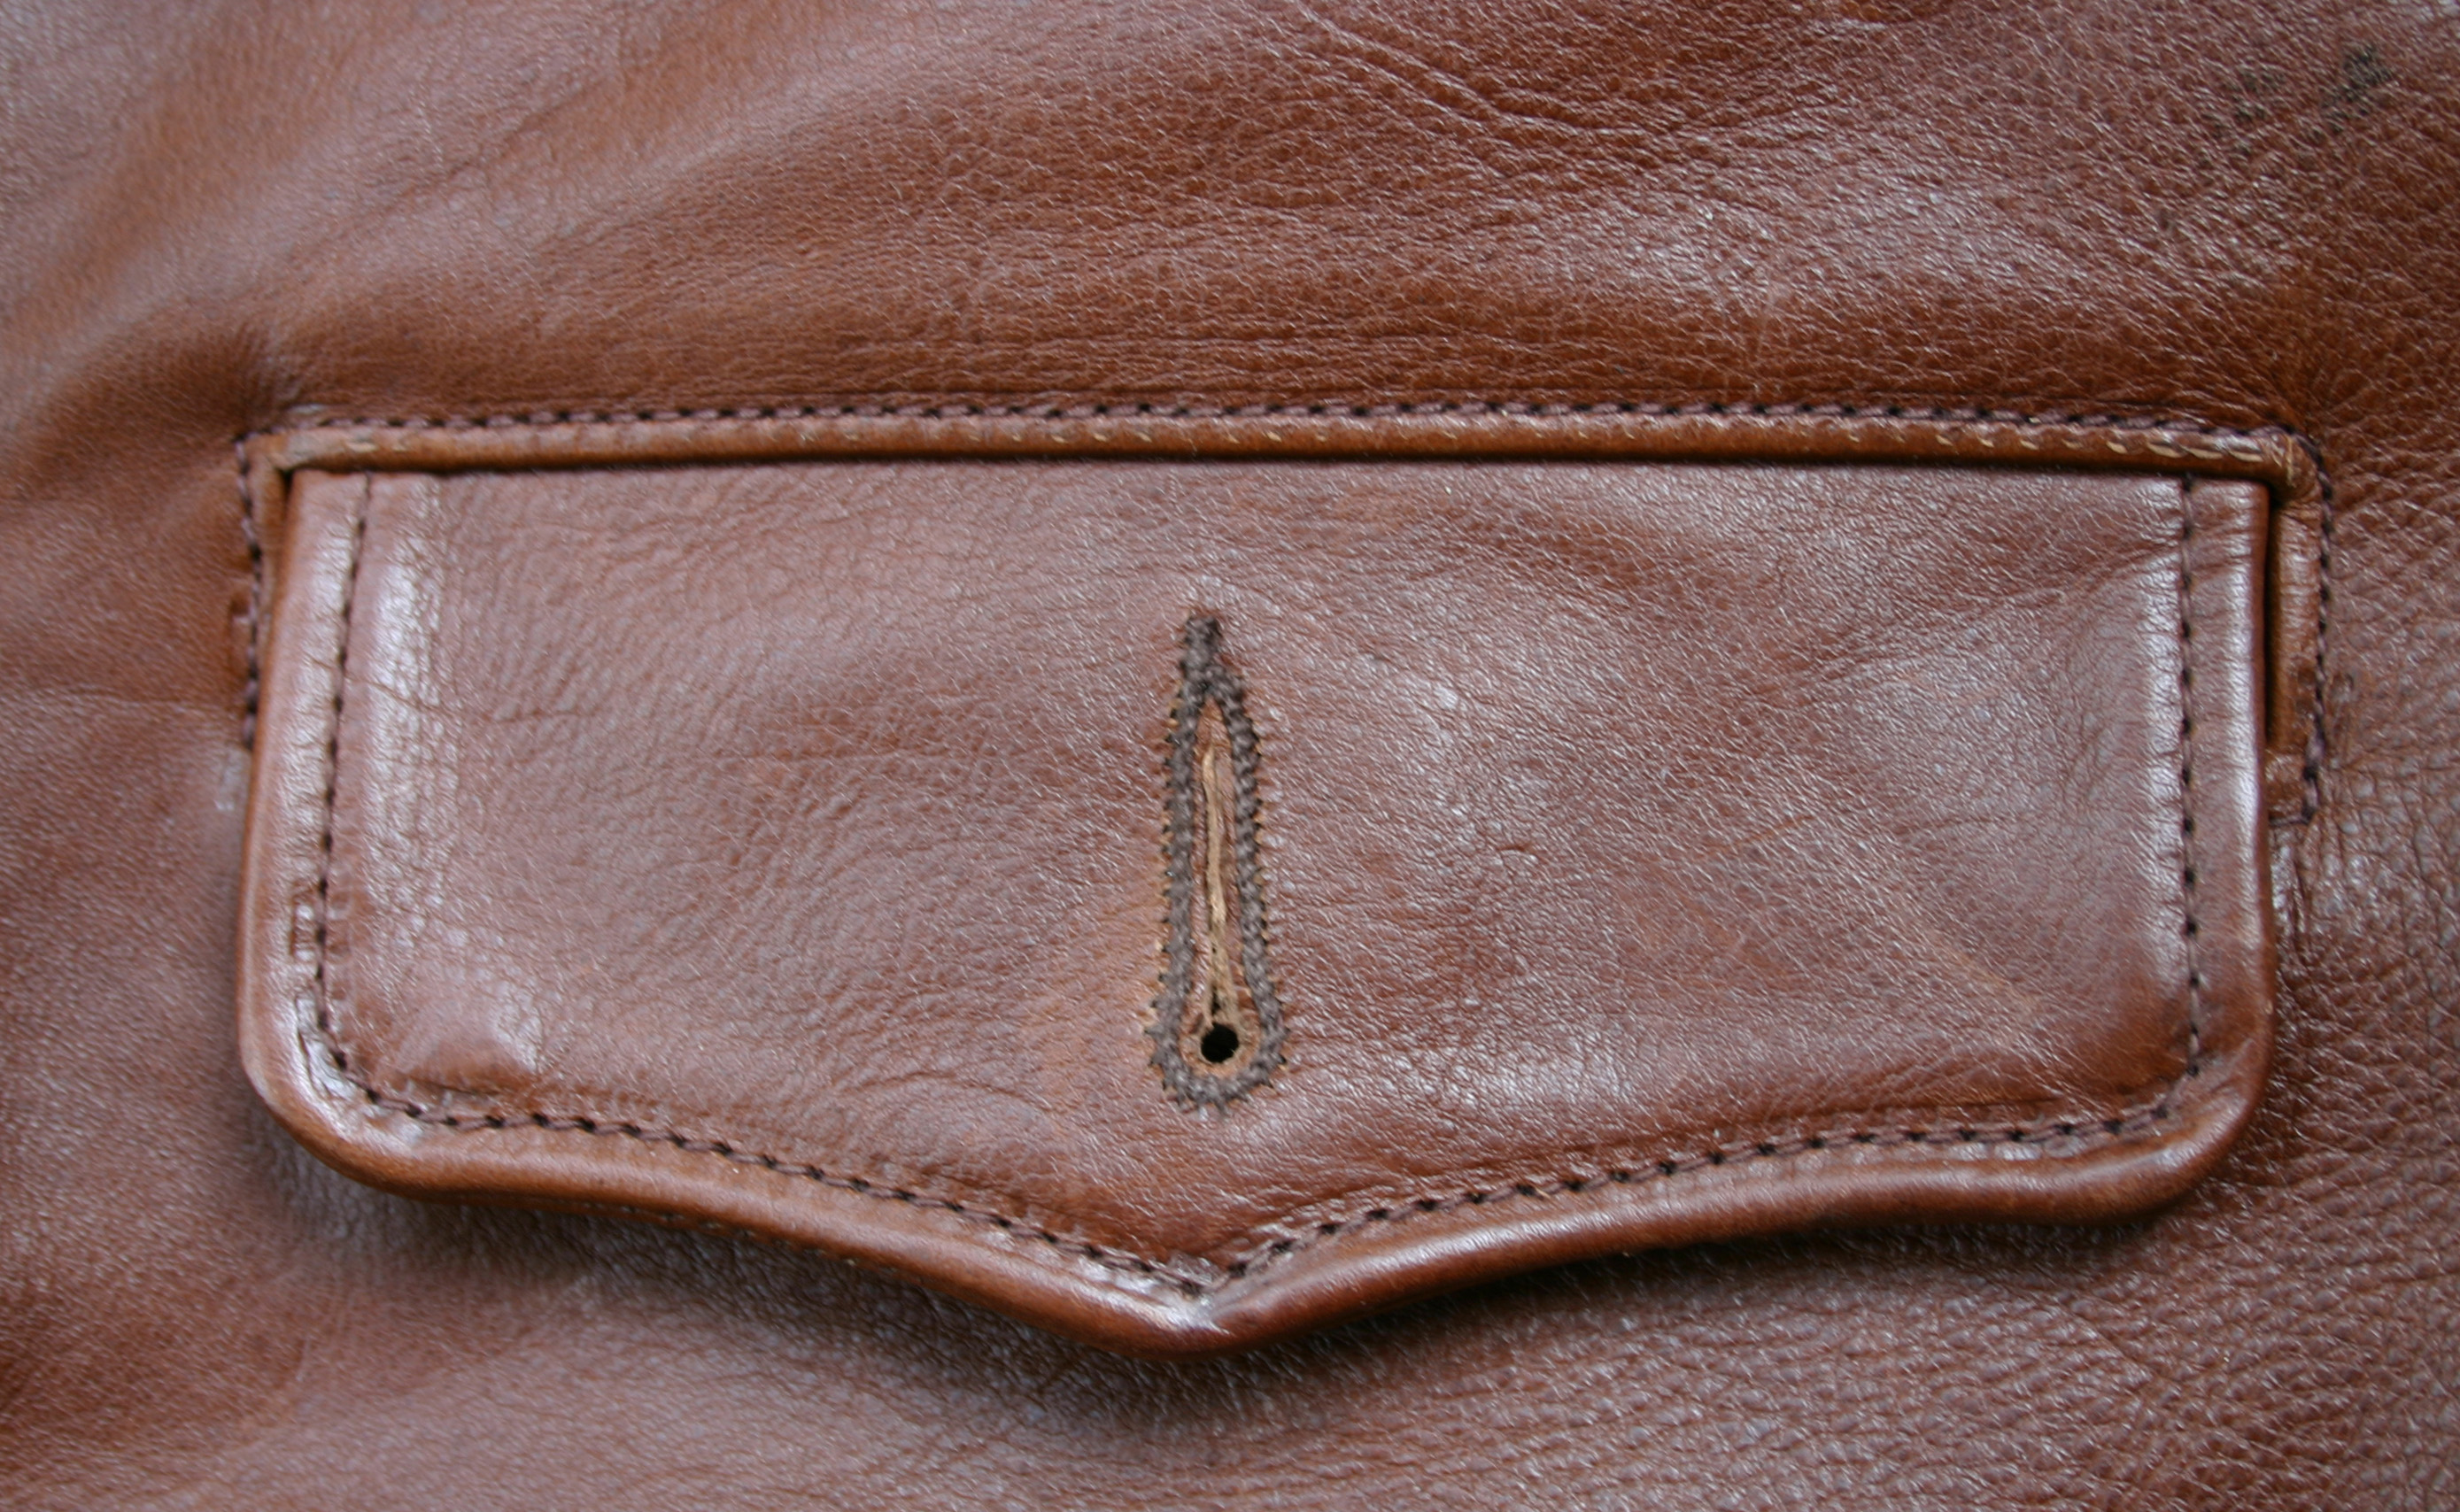 Unbuttoned Pocket Flap | Vintage Leather Jackets Forum